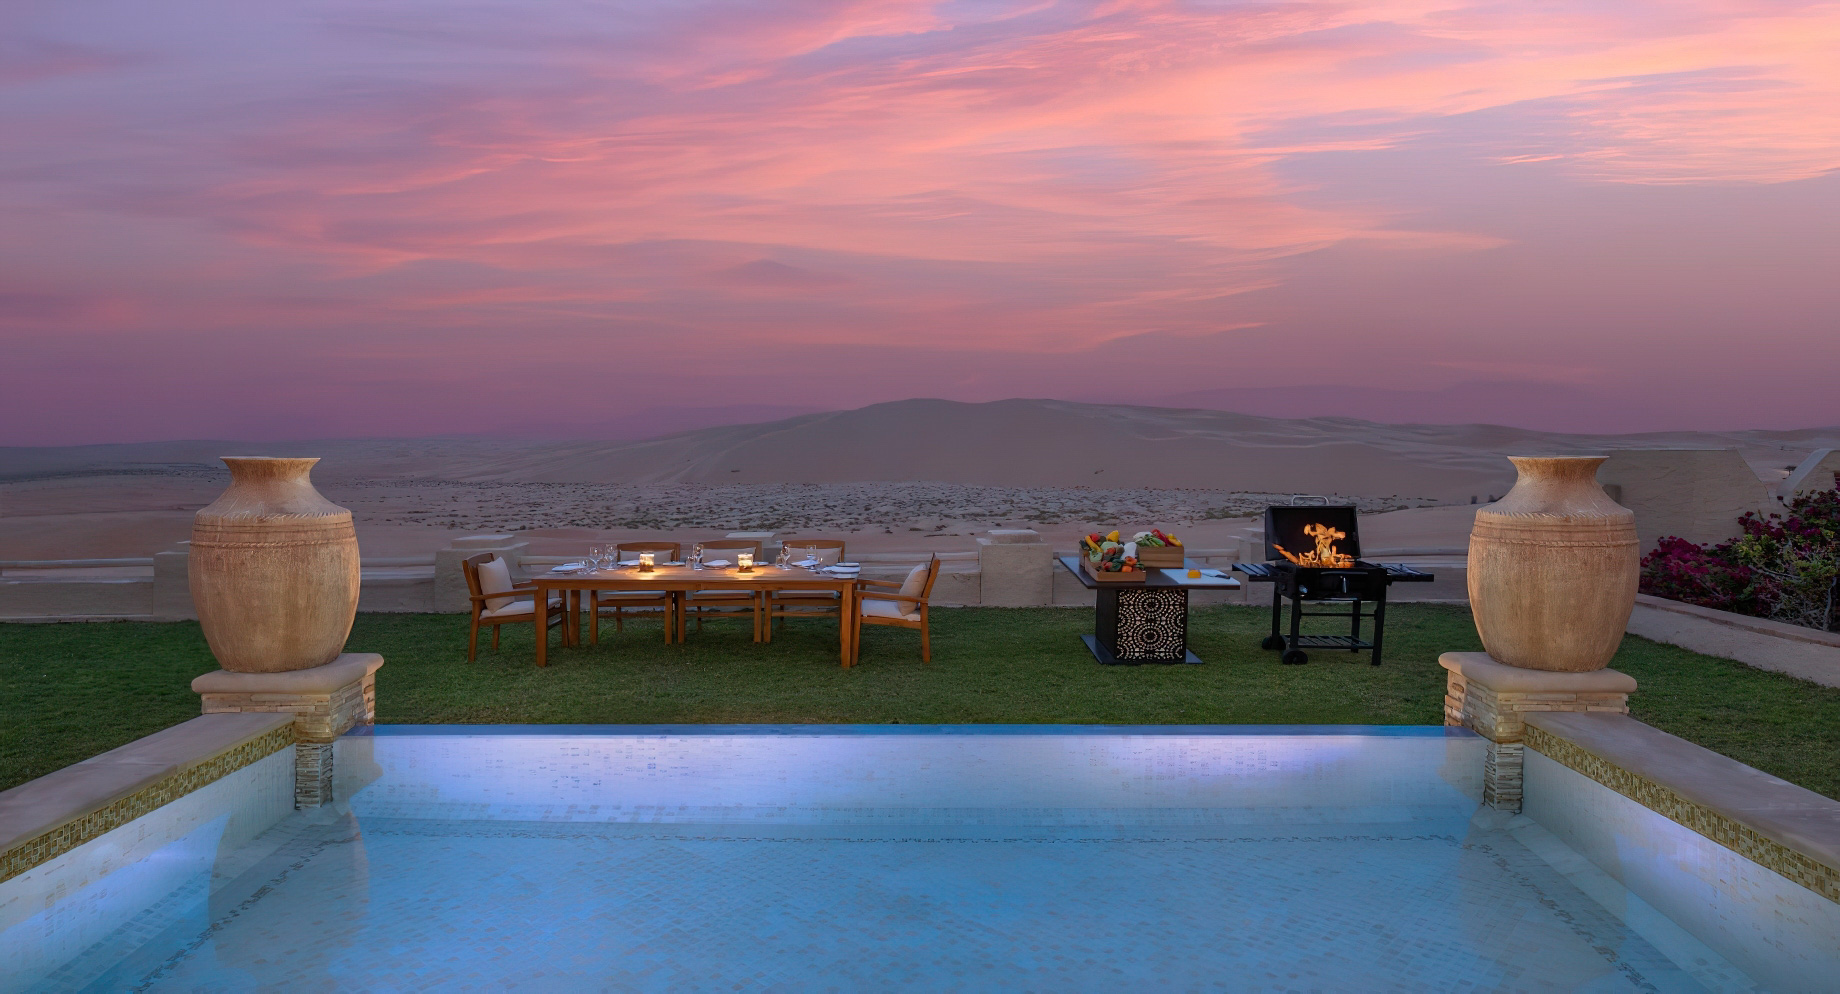 Qasr Al Sarab Desert Resort by Anantara – Abu Dhabi – United Arab Emirates – Evening Dining